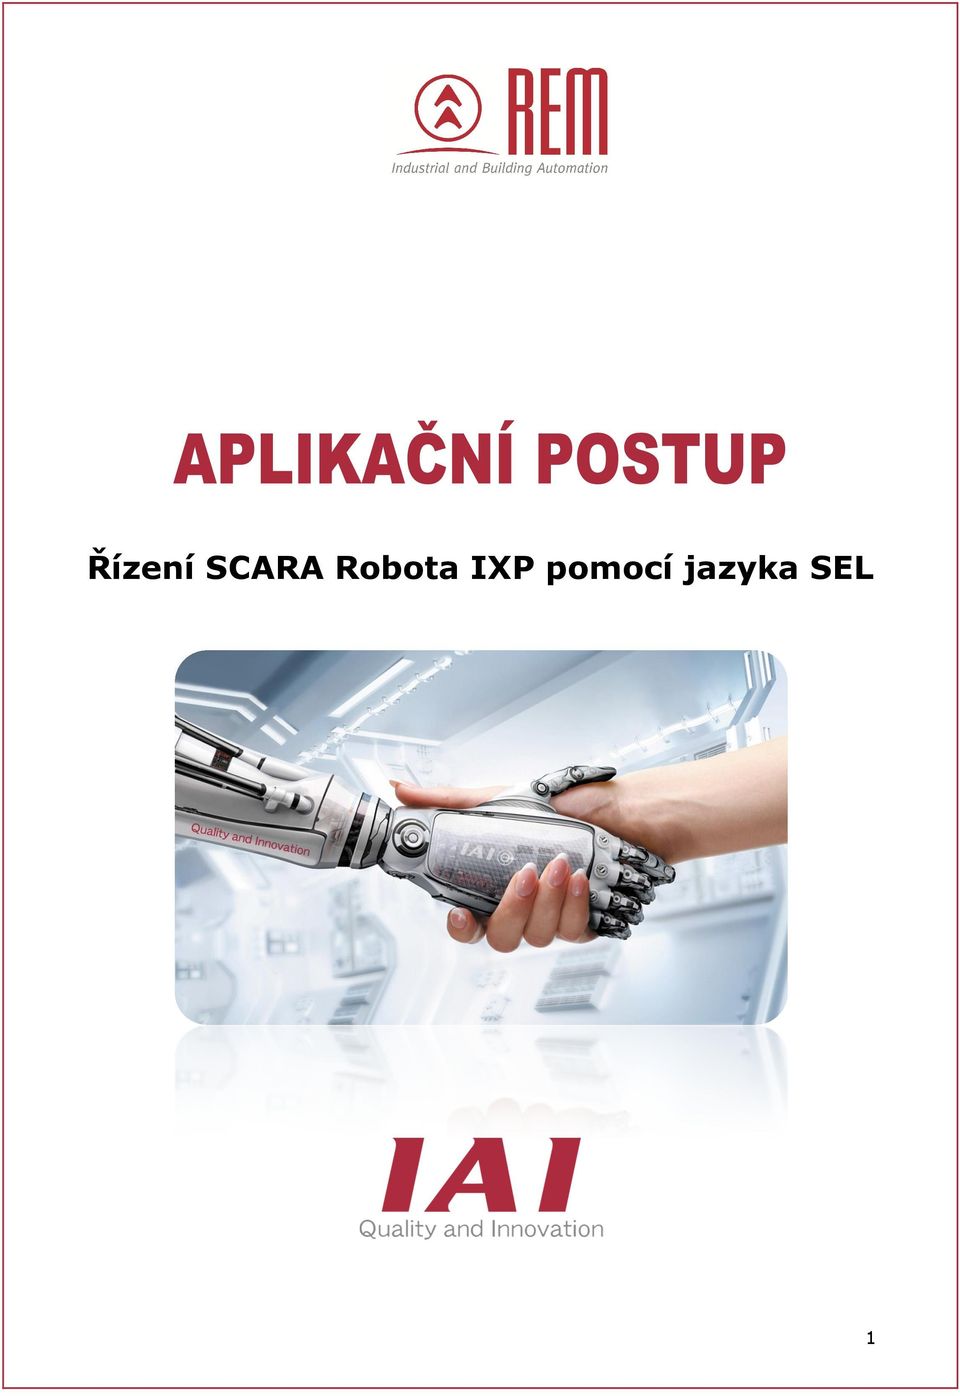 Robota IXP